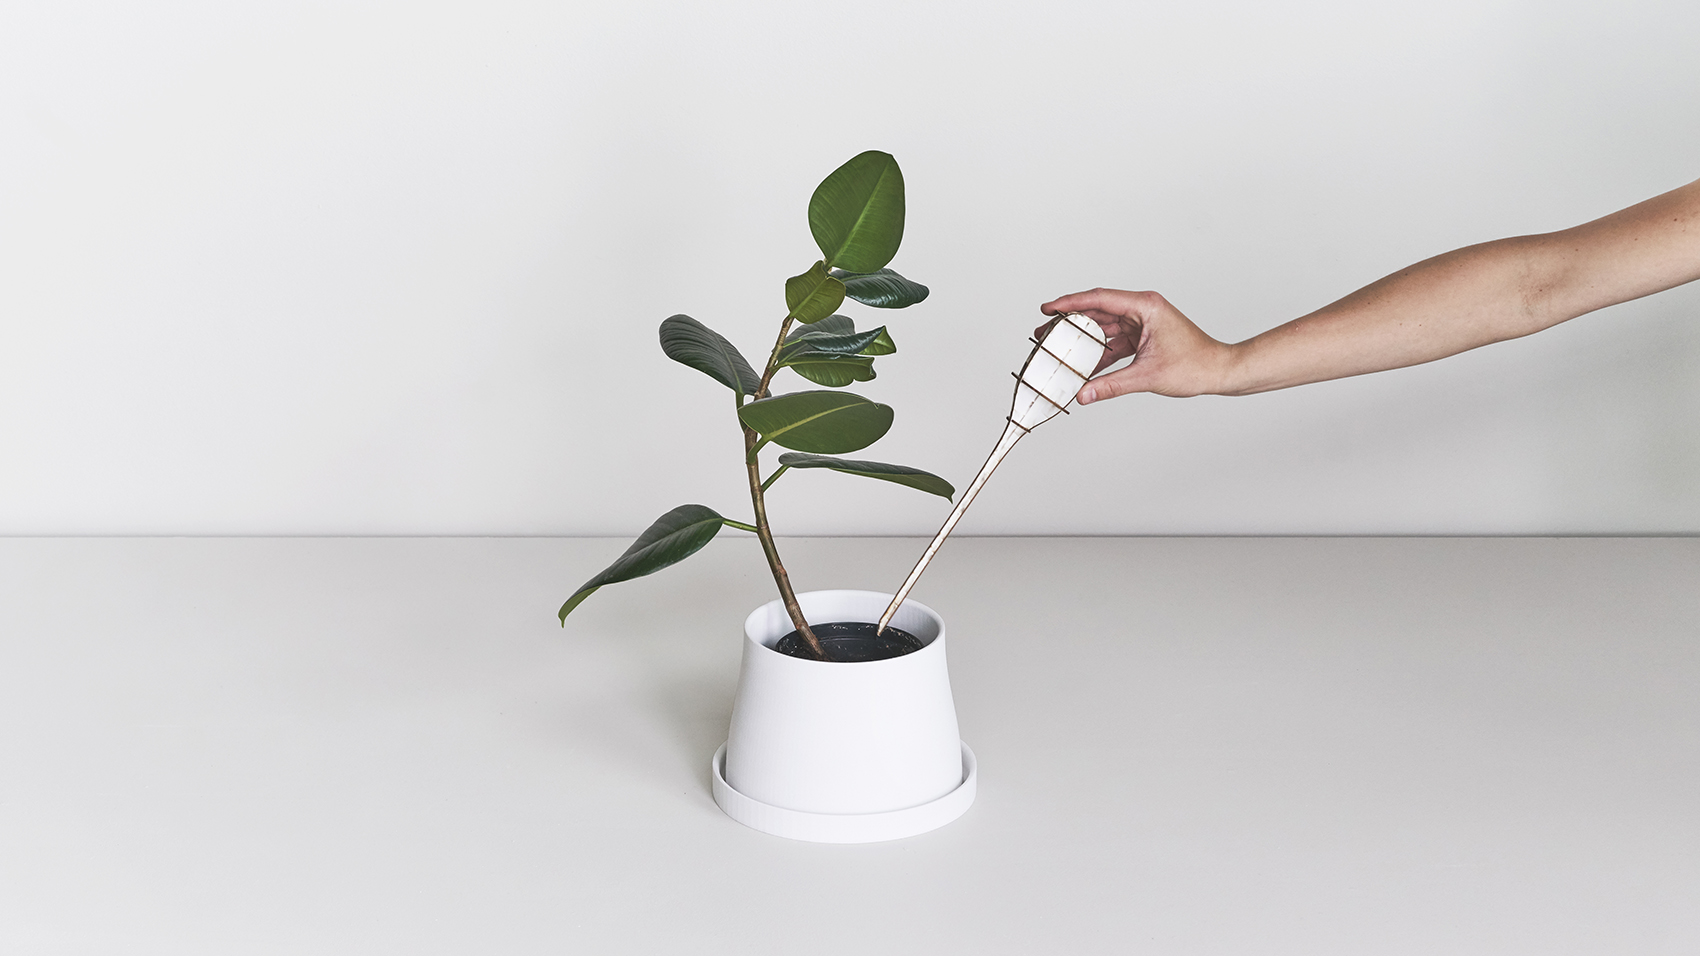 Terra园艺工具系列/创造一个植物世界-50